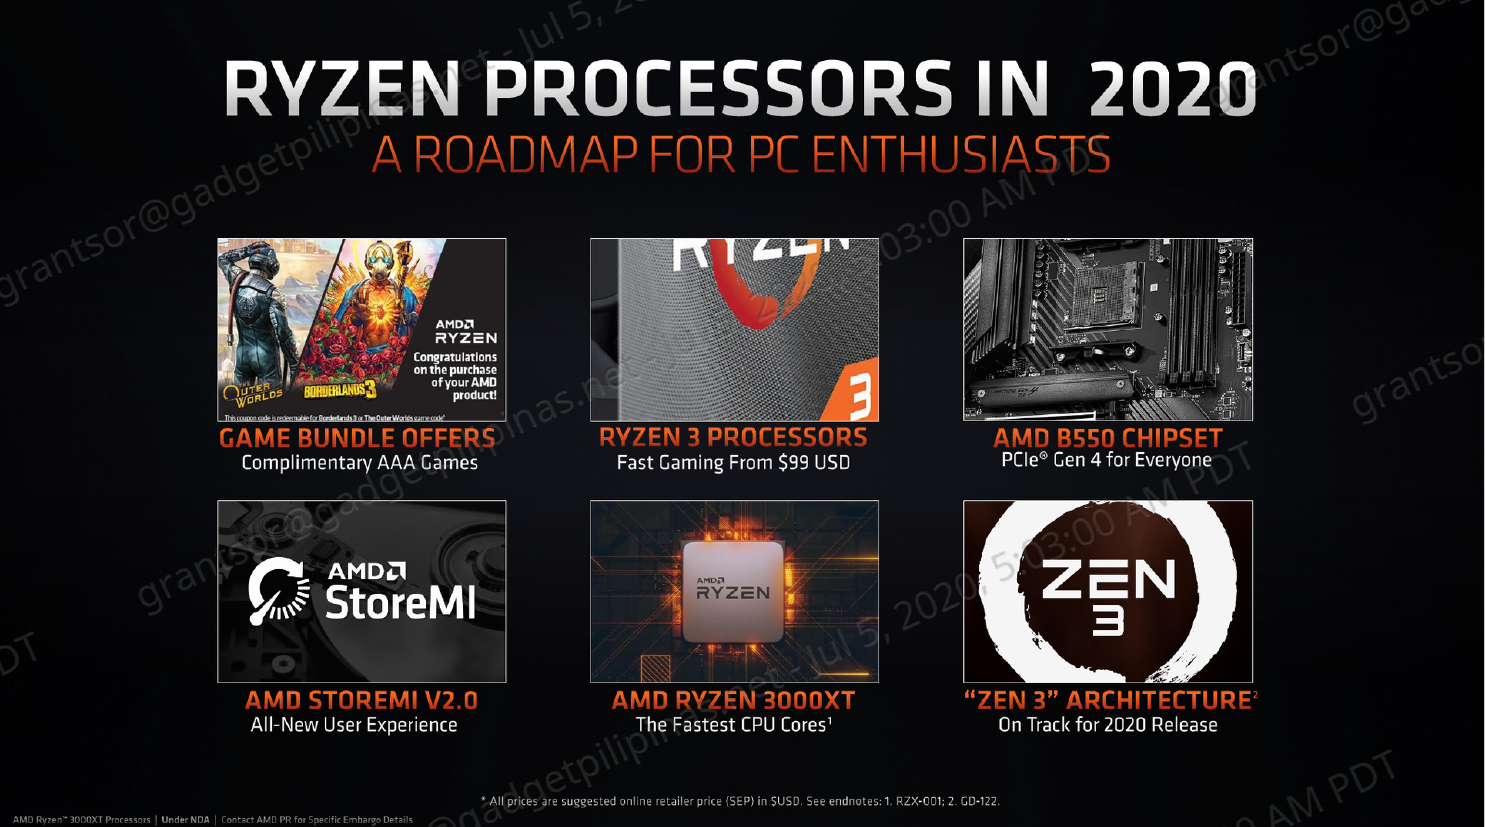 AMD Ryzen 7 3800XT Review - Roadmap